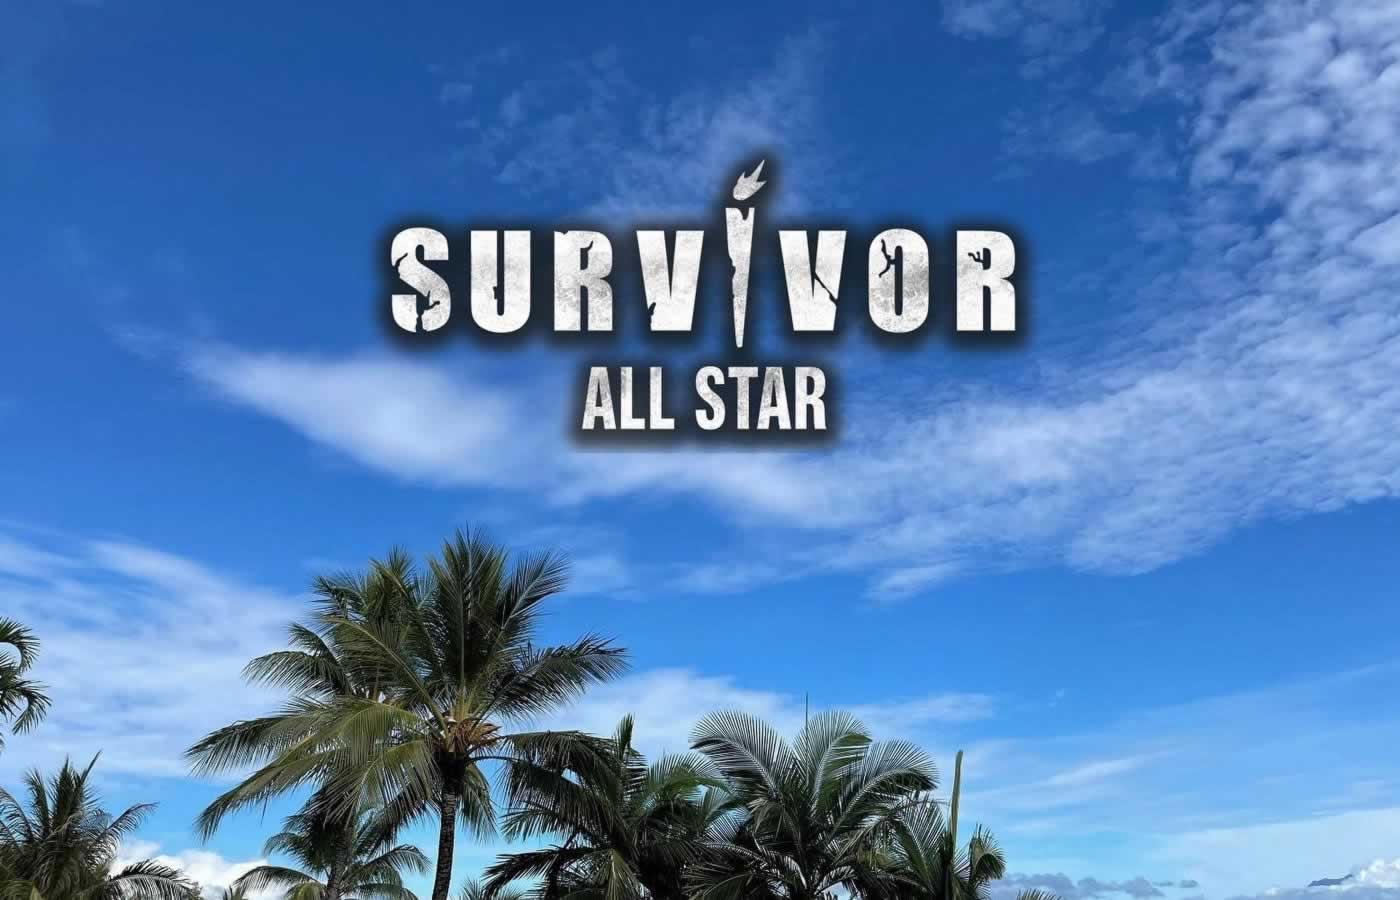 Το Survivor All Star, αλλάζει και όπως θα δούμε στο επεισόδιο της Κυριακής, ο Γιώργος Λιανός θα καλέσει τους παίκτες των δύο ομάδων σε νέο έκτακτο συμβούλιο του νησιού